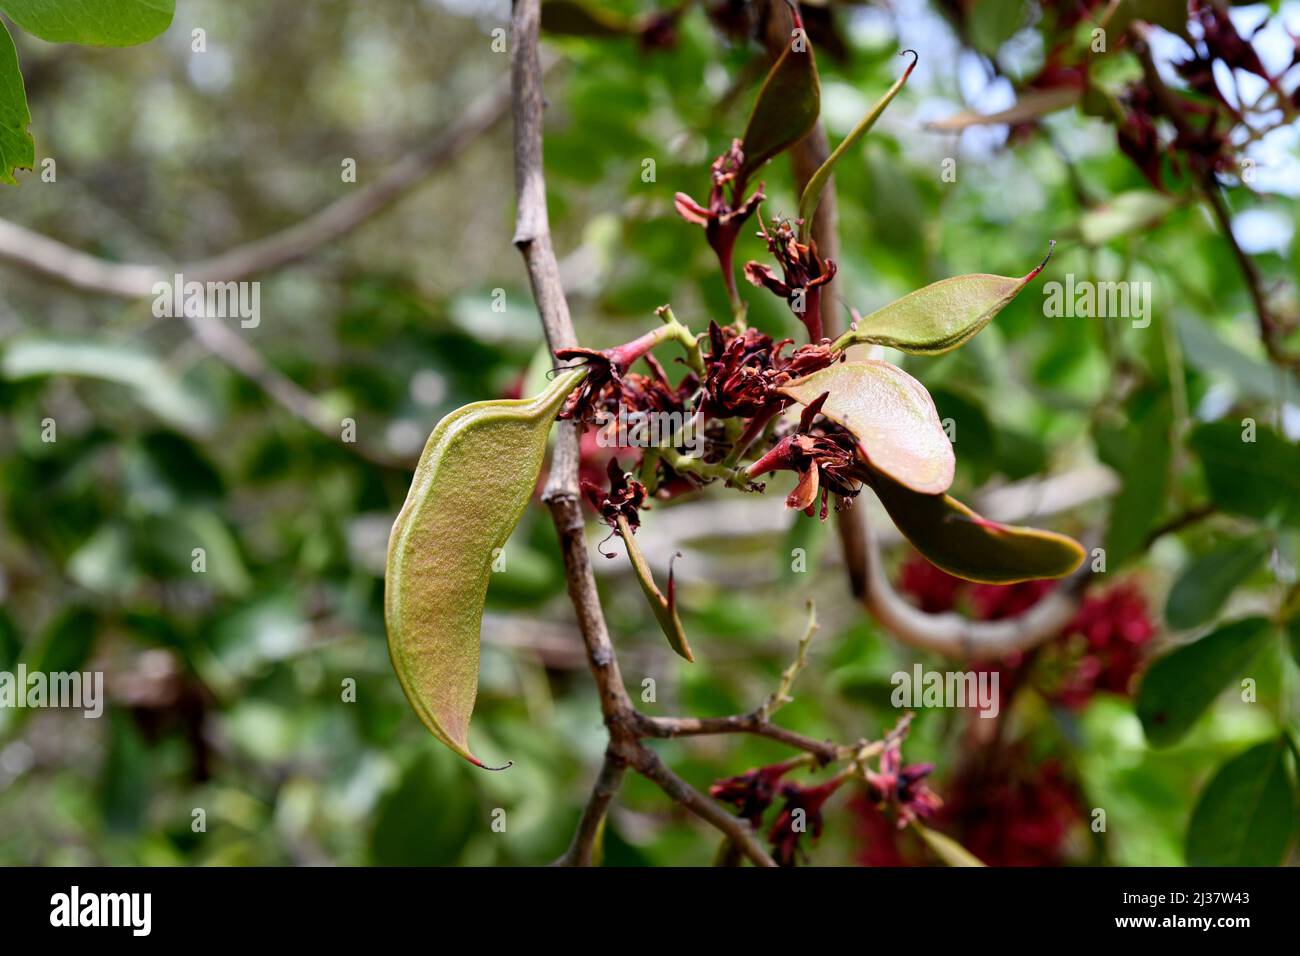 Die weinende bohne (Schotia brachypetala oder Schotia latifolia) ist ein Laubbaum, der im südlichen Afrika beheimatet ist. Junge Früchte. Stockfoto